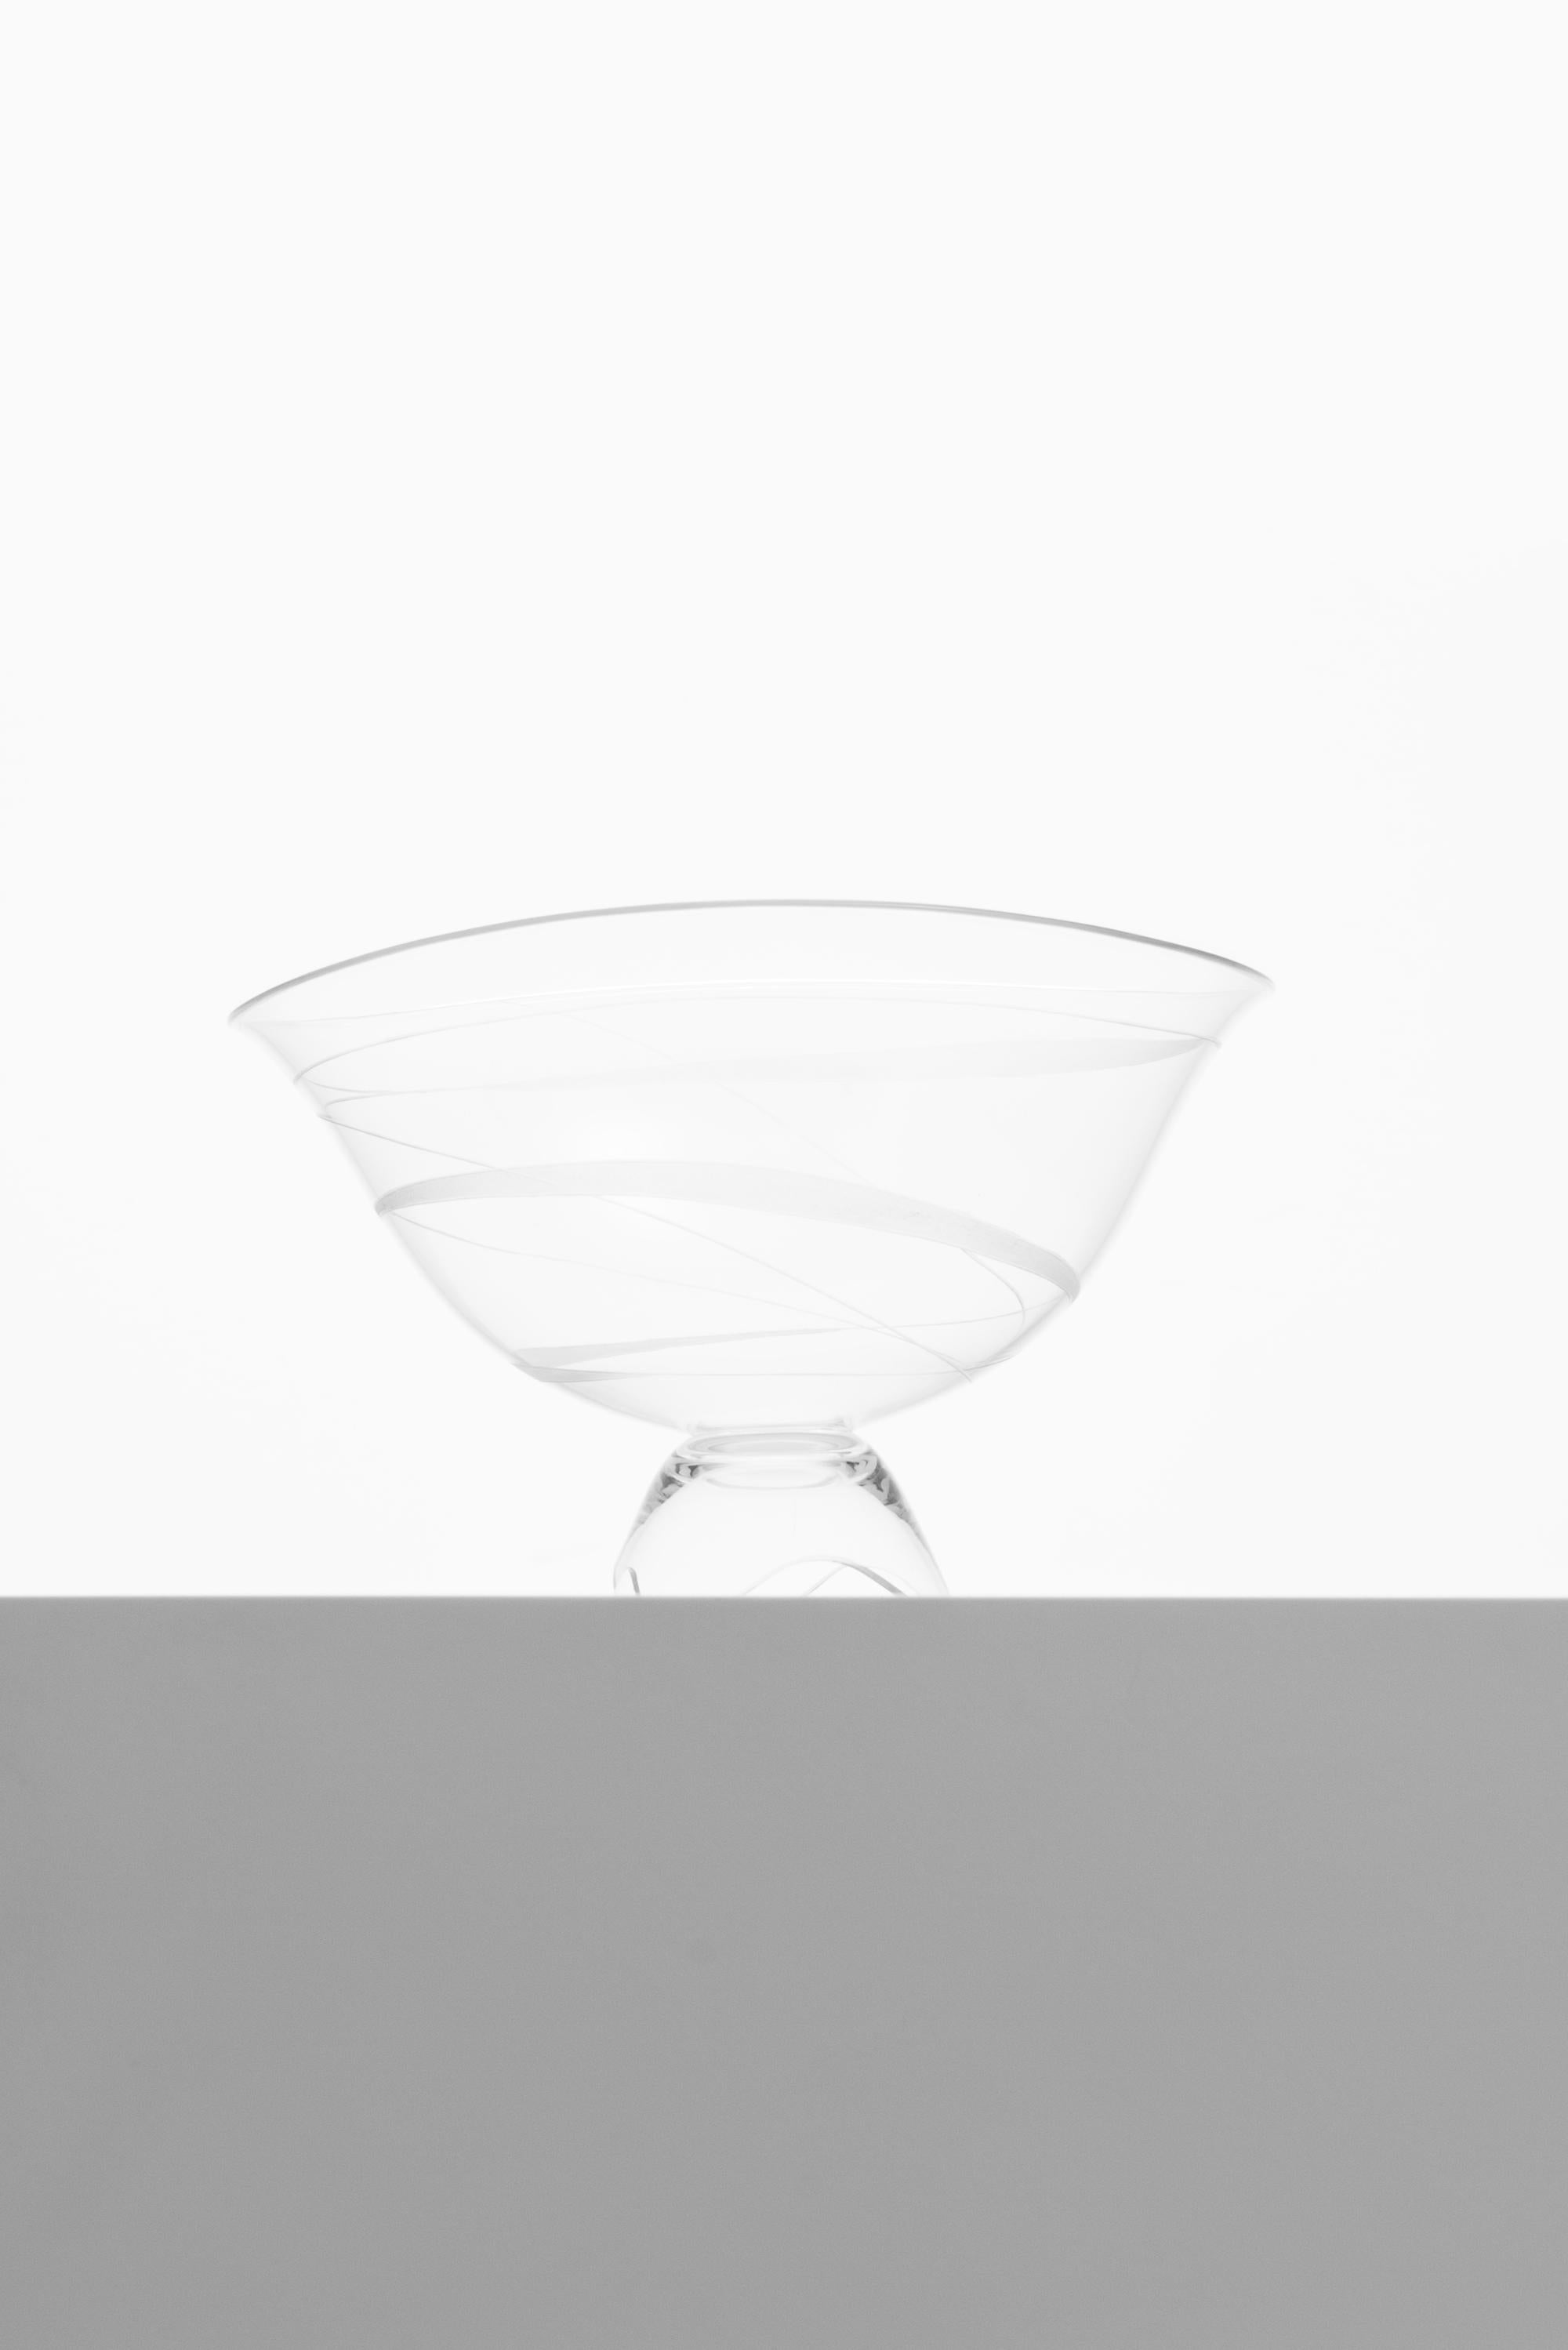 Glass vase designed by Vicke Lindstrand. Produced by Kosta in Sweden. Signed ‘Kosta LG193 VL'.